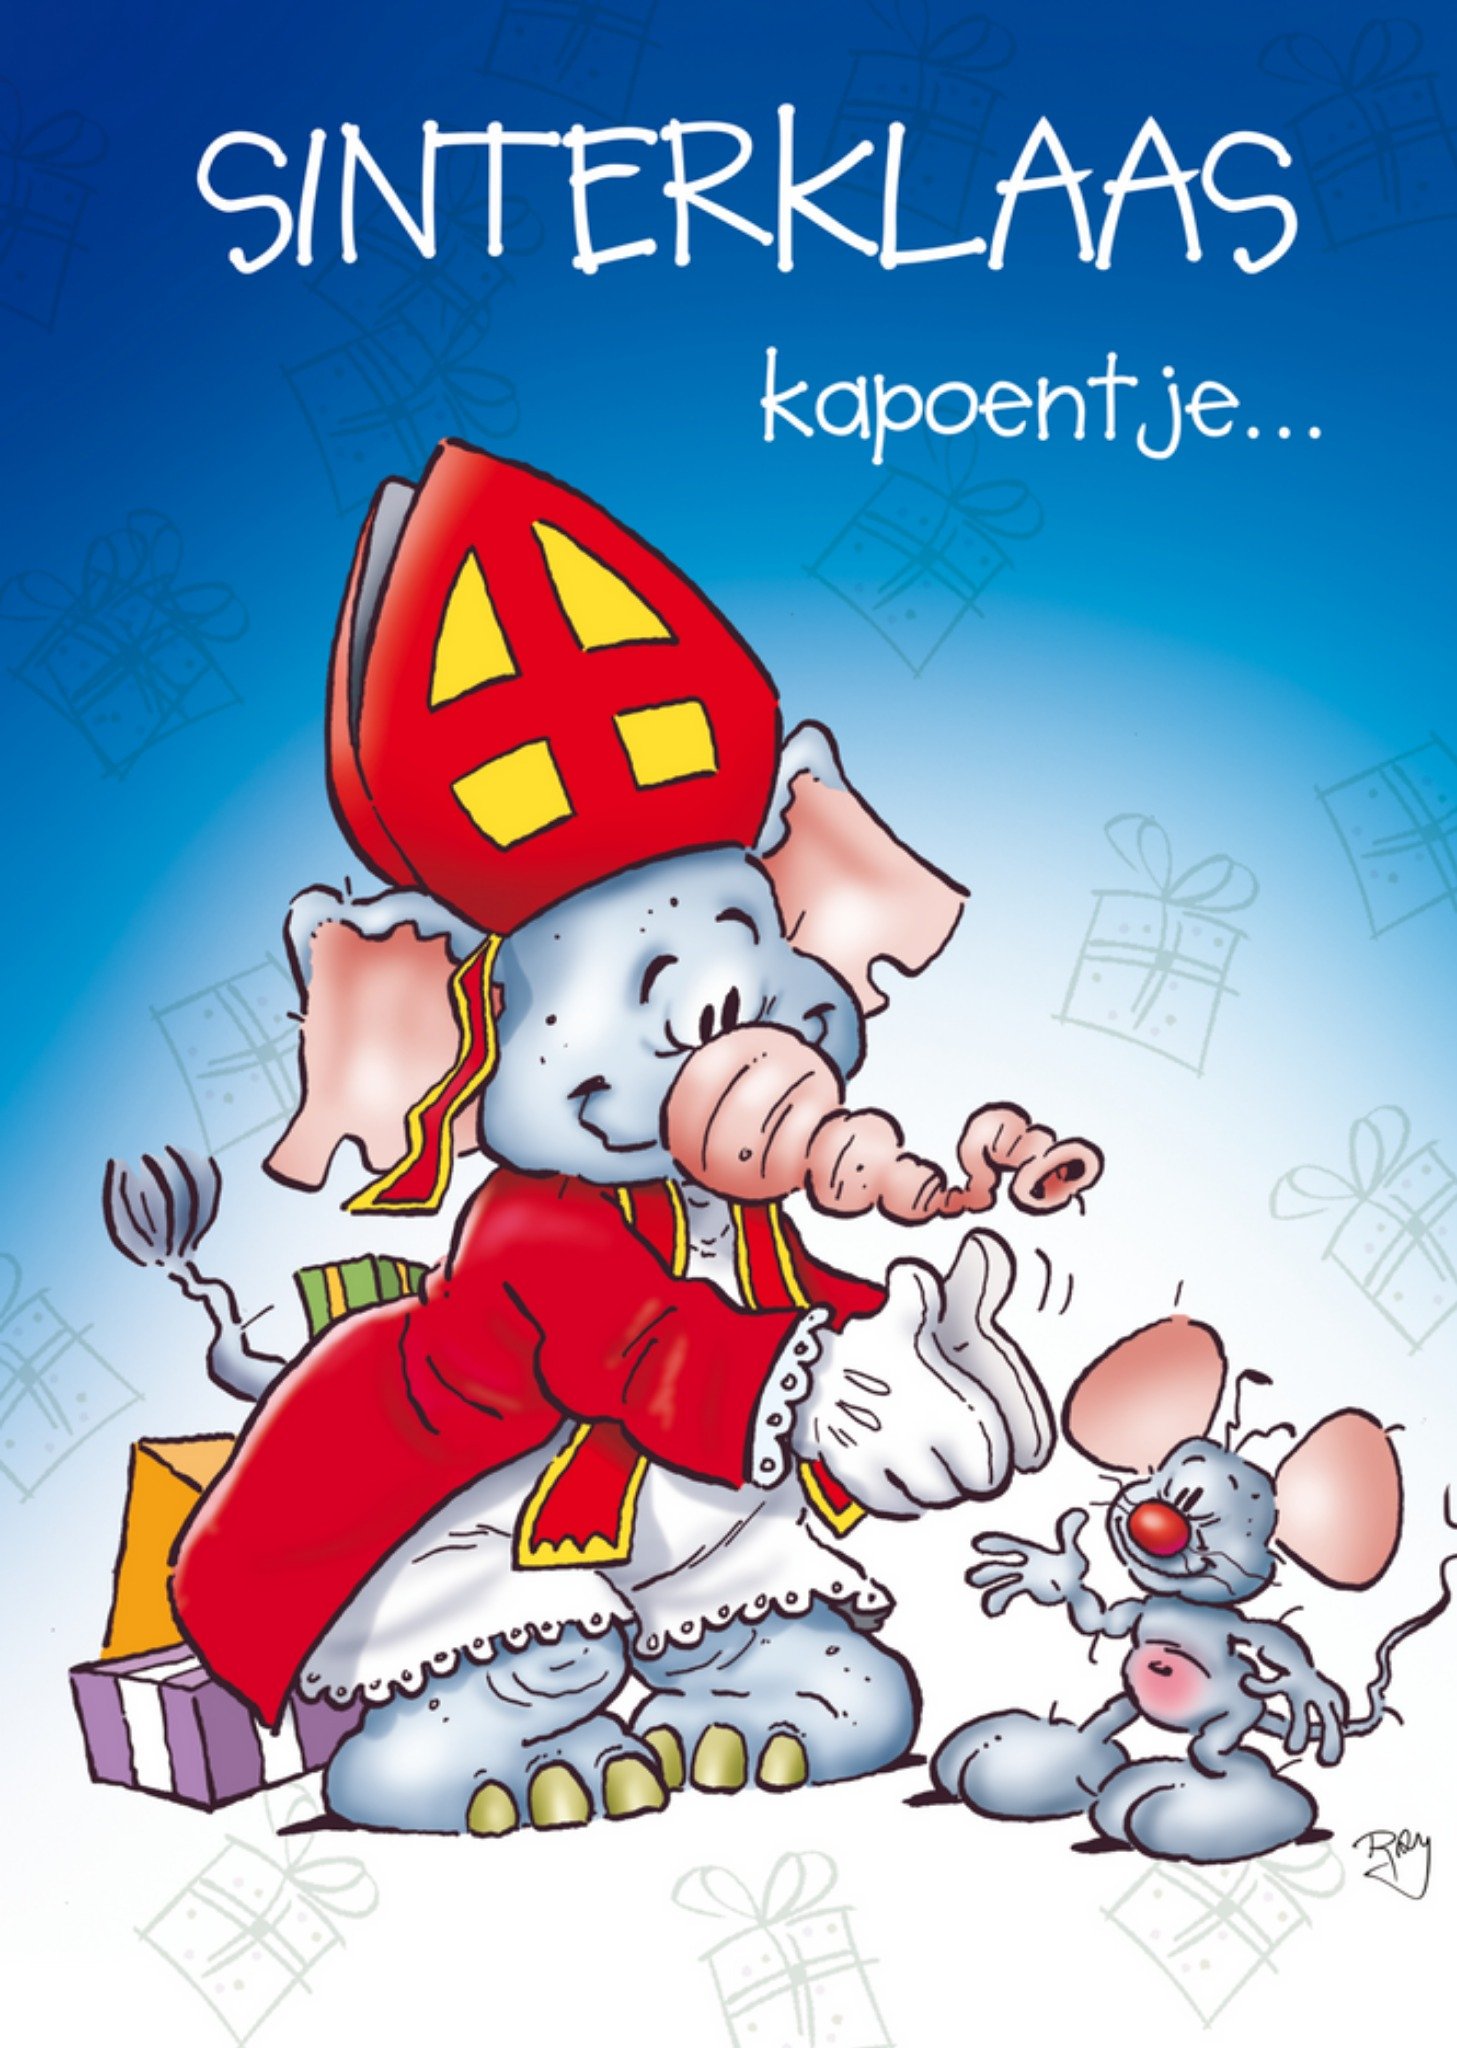 Doodles - Sinterklaaskaart - sinterklaas kapoentje